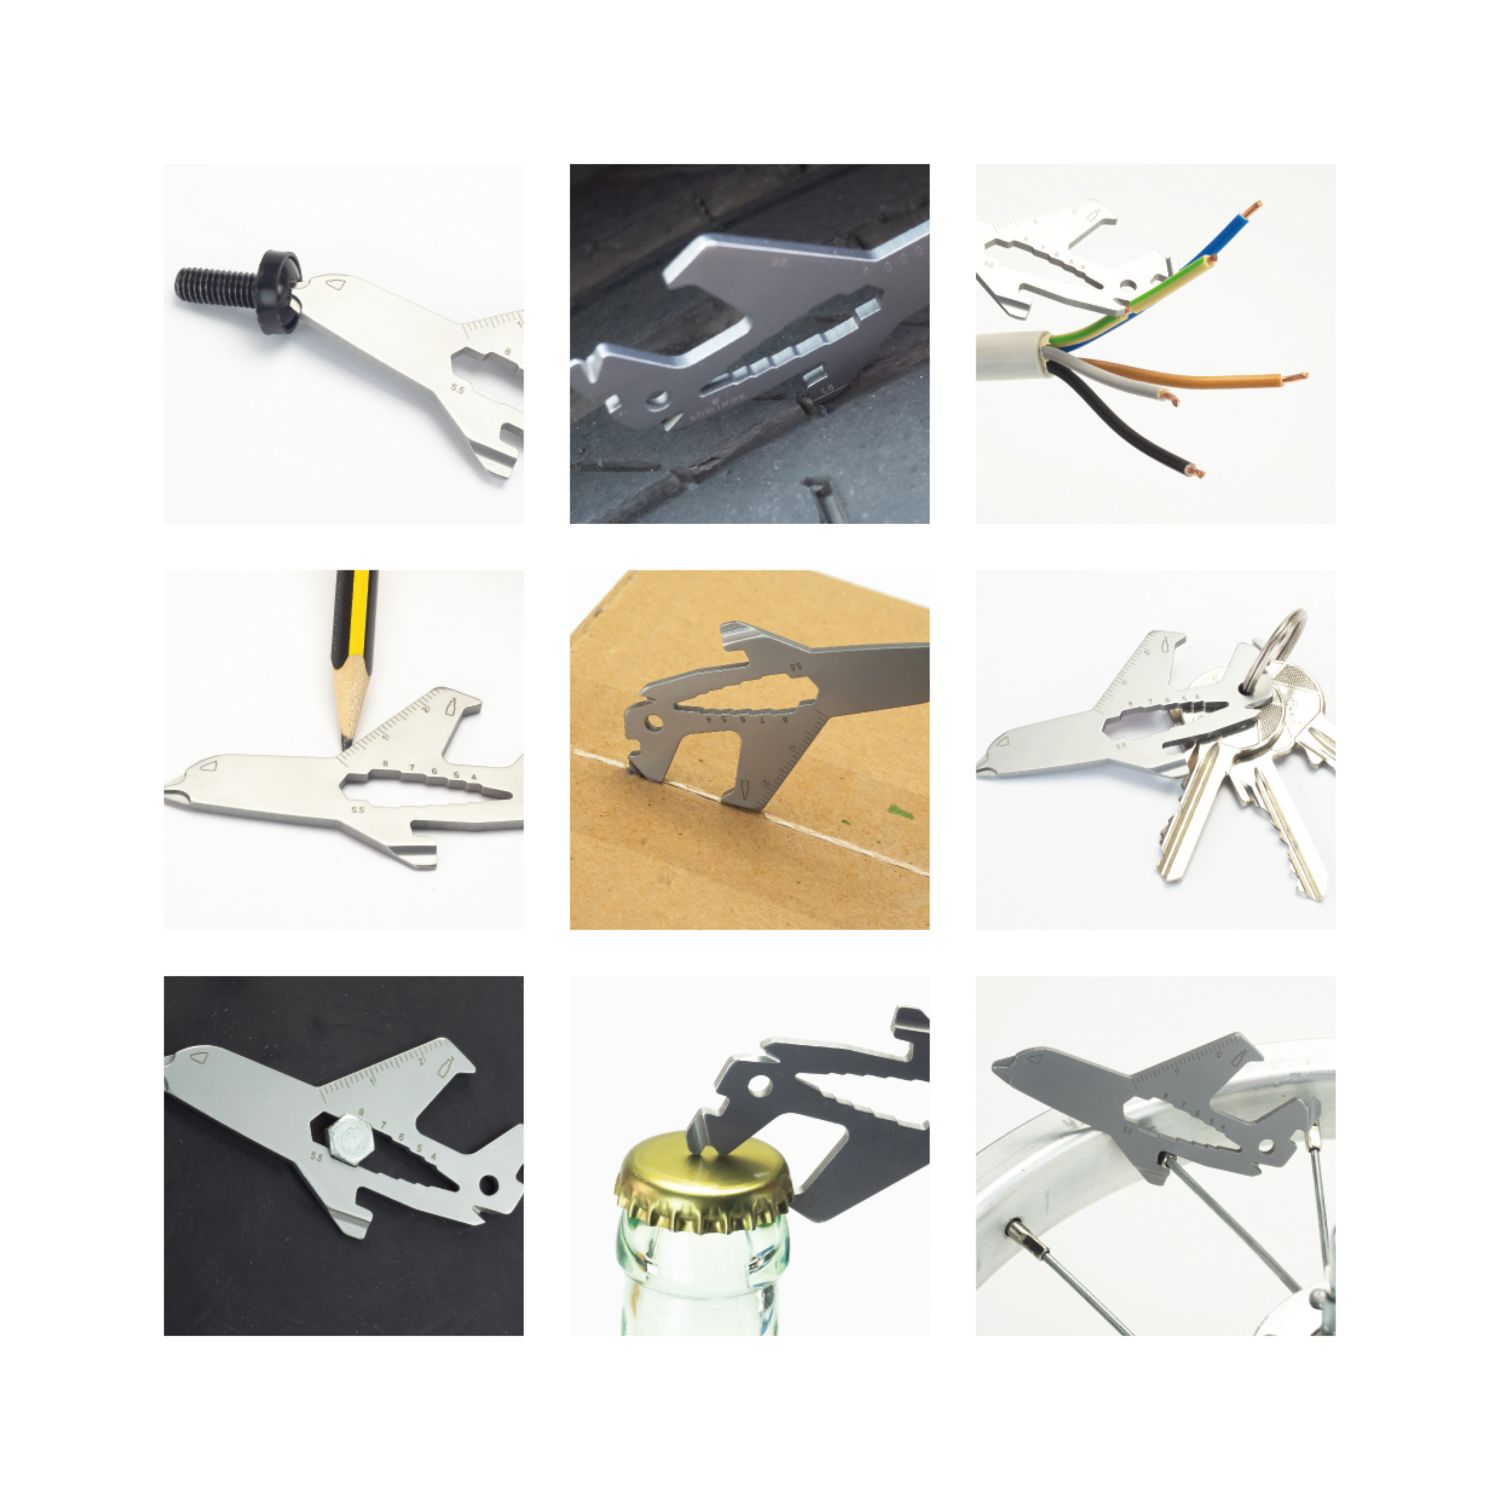 ROMINOX® Key Tool Airplane (18 Funktionen) Werkzeug 2K2101g